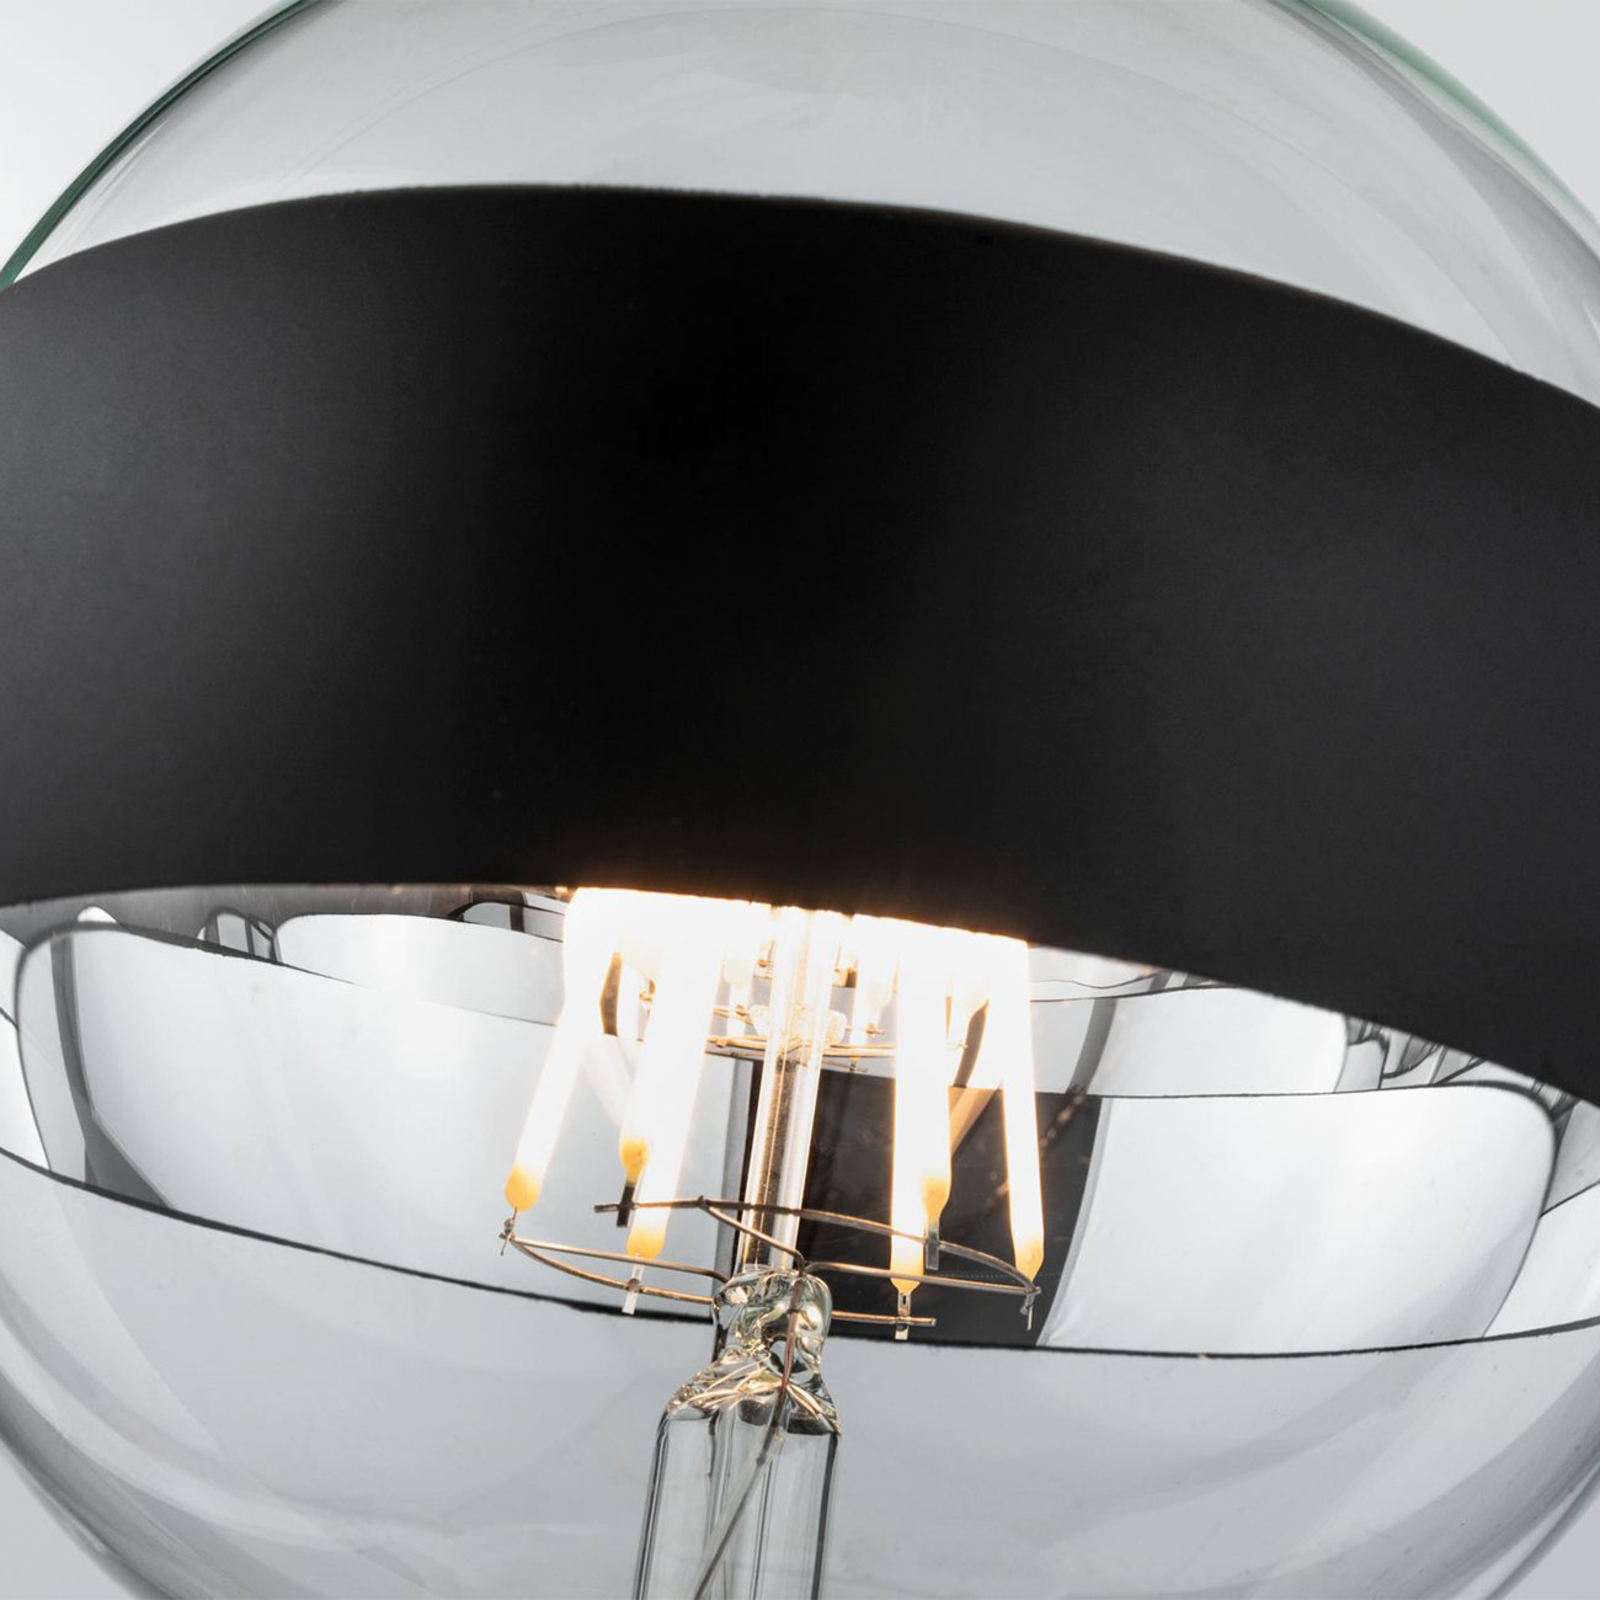 Paulmann LED E27 6,5W G125 lustro okrągłe czarne